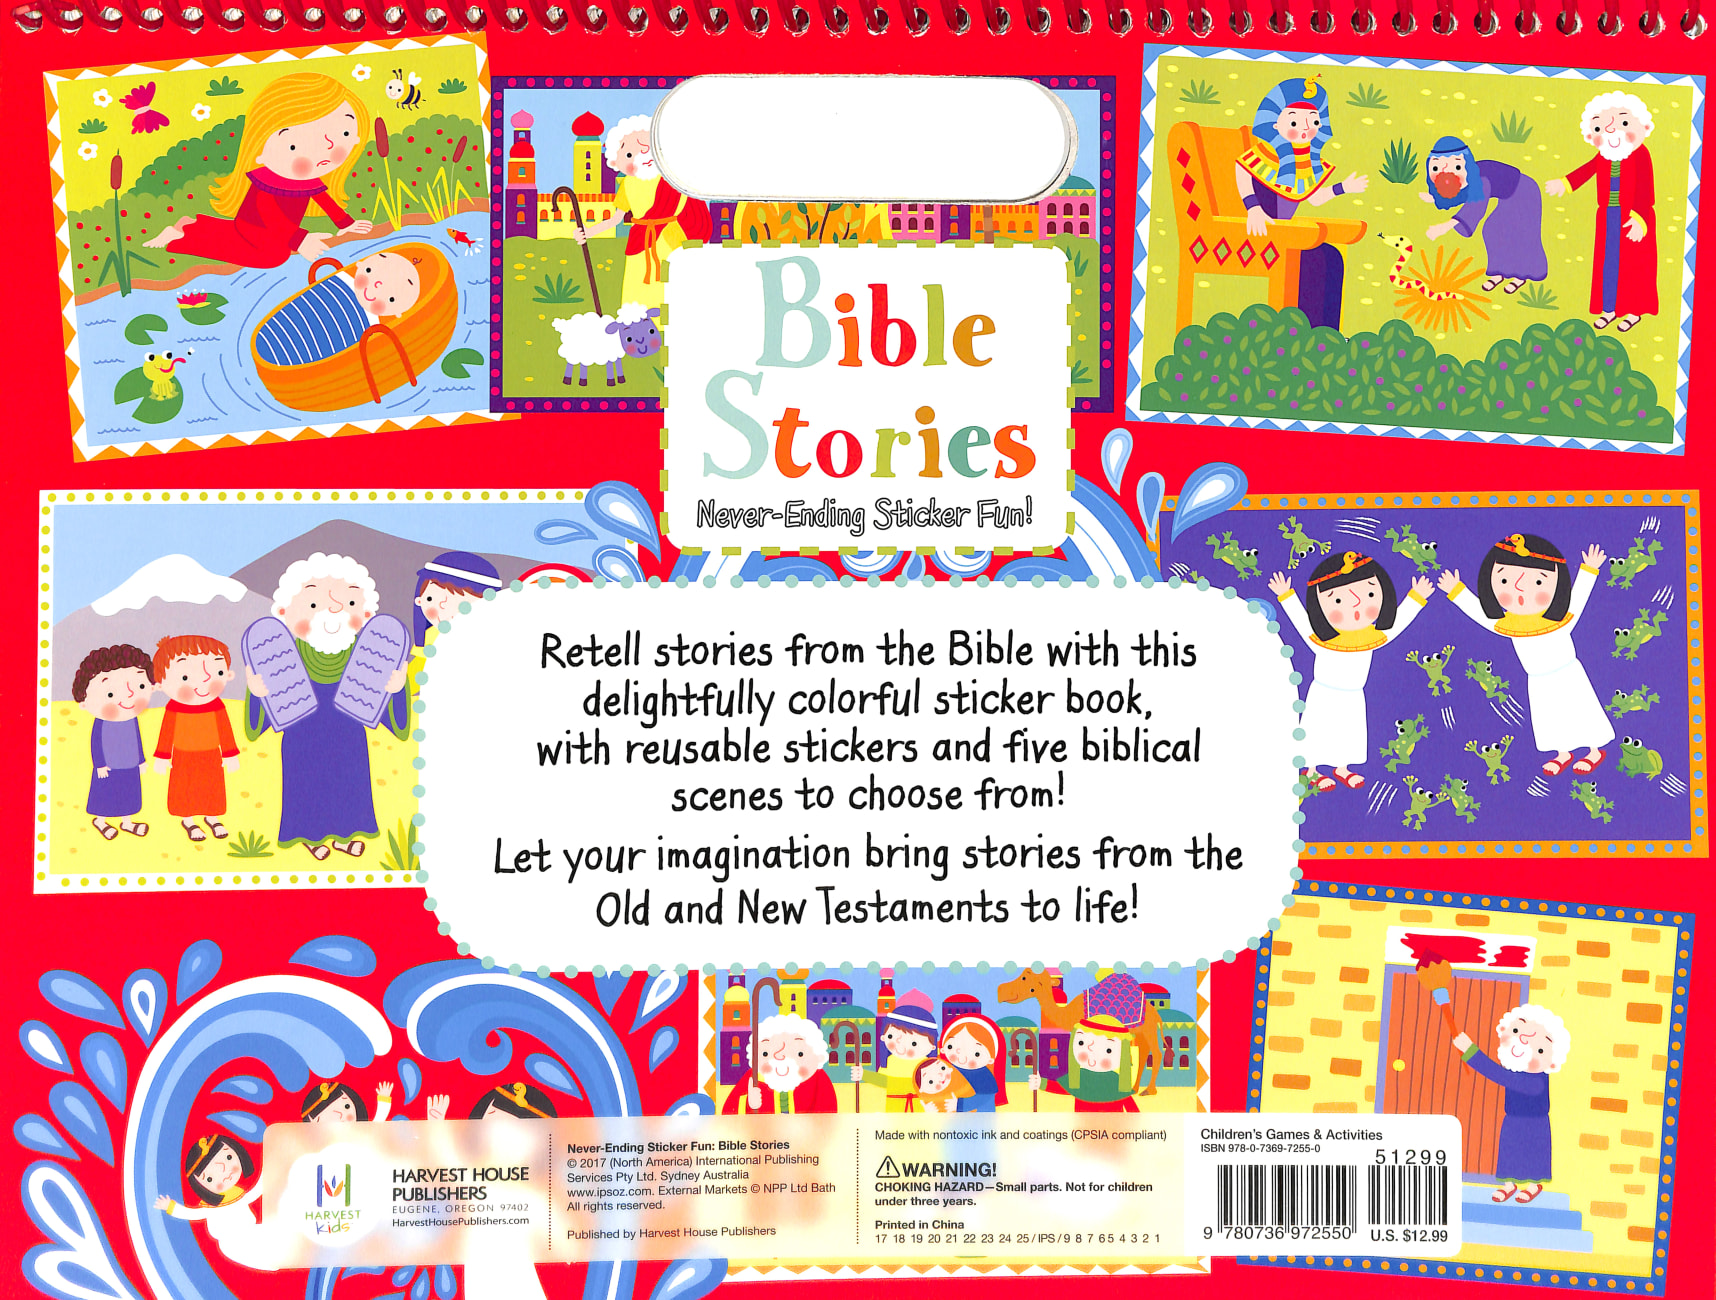 Never-Ending Sticker Fun: Bible Stories Spiral